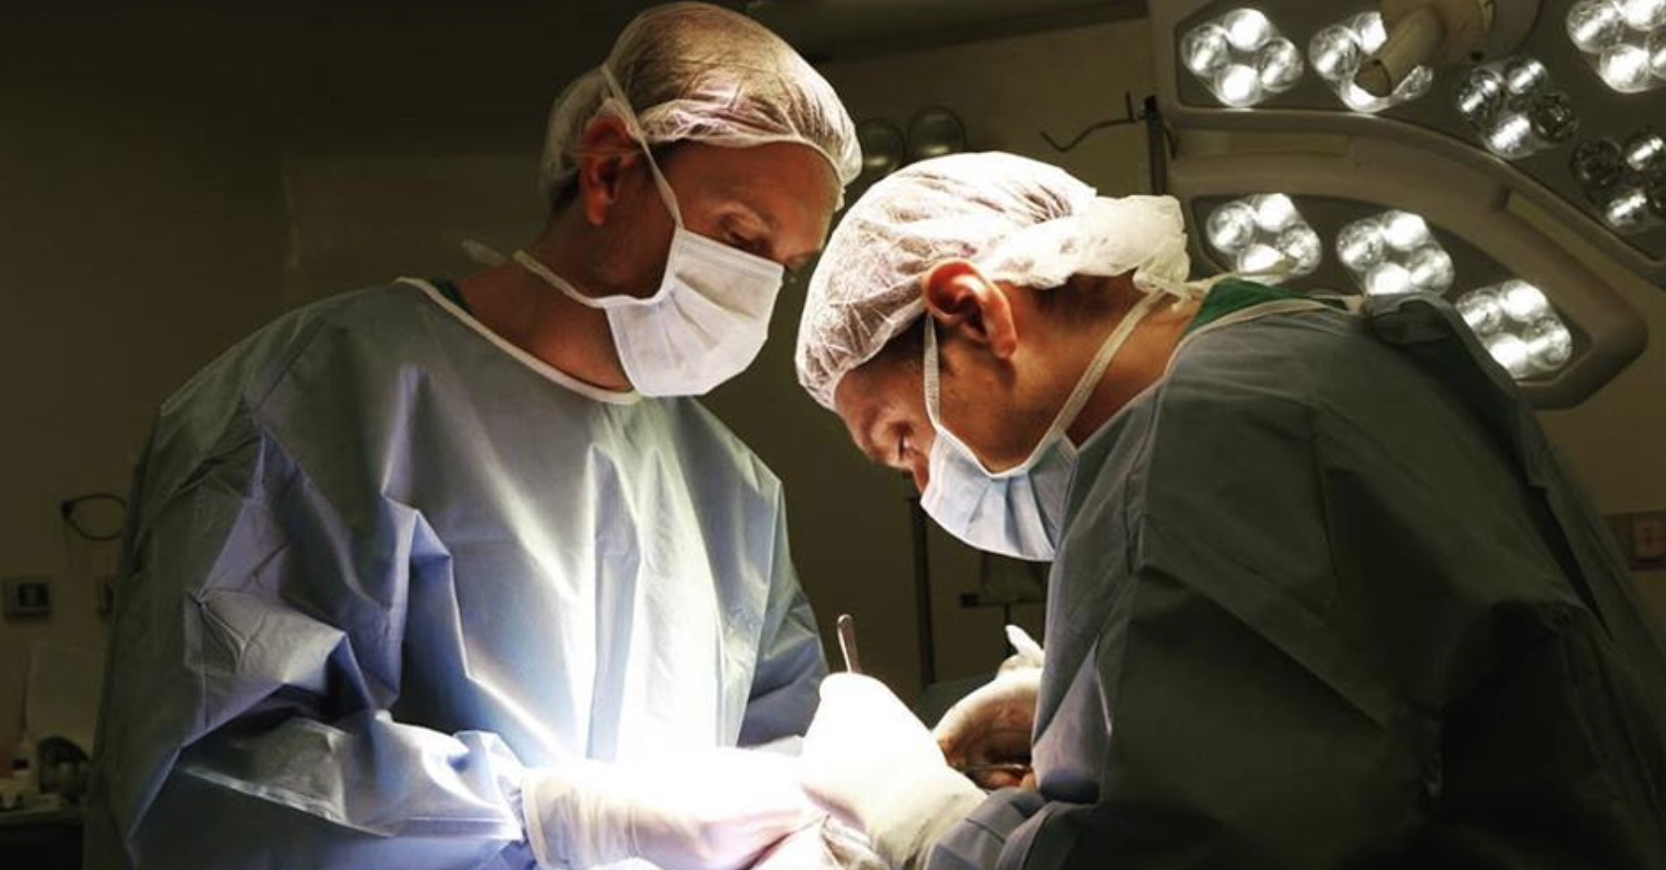 Cirugías plásticas: Especialistas entregan detalles y medidas para considerar previo a una intervención